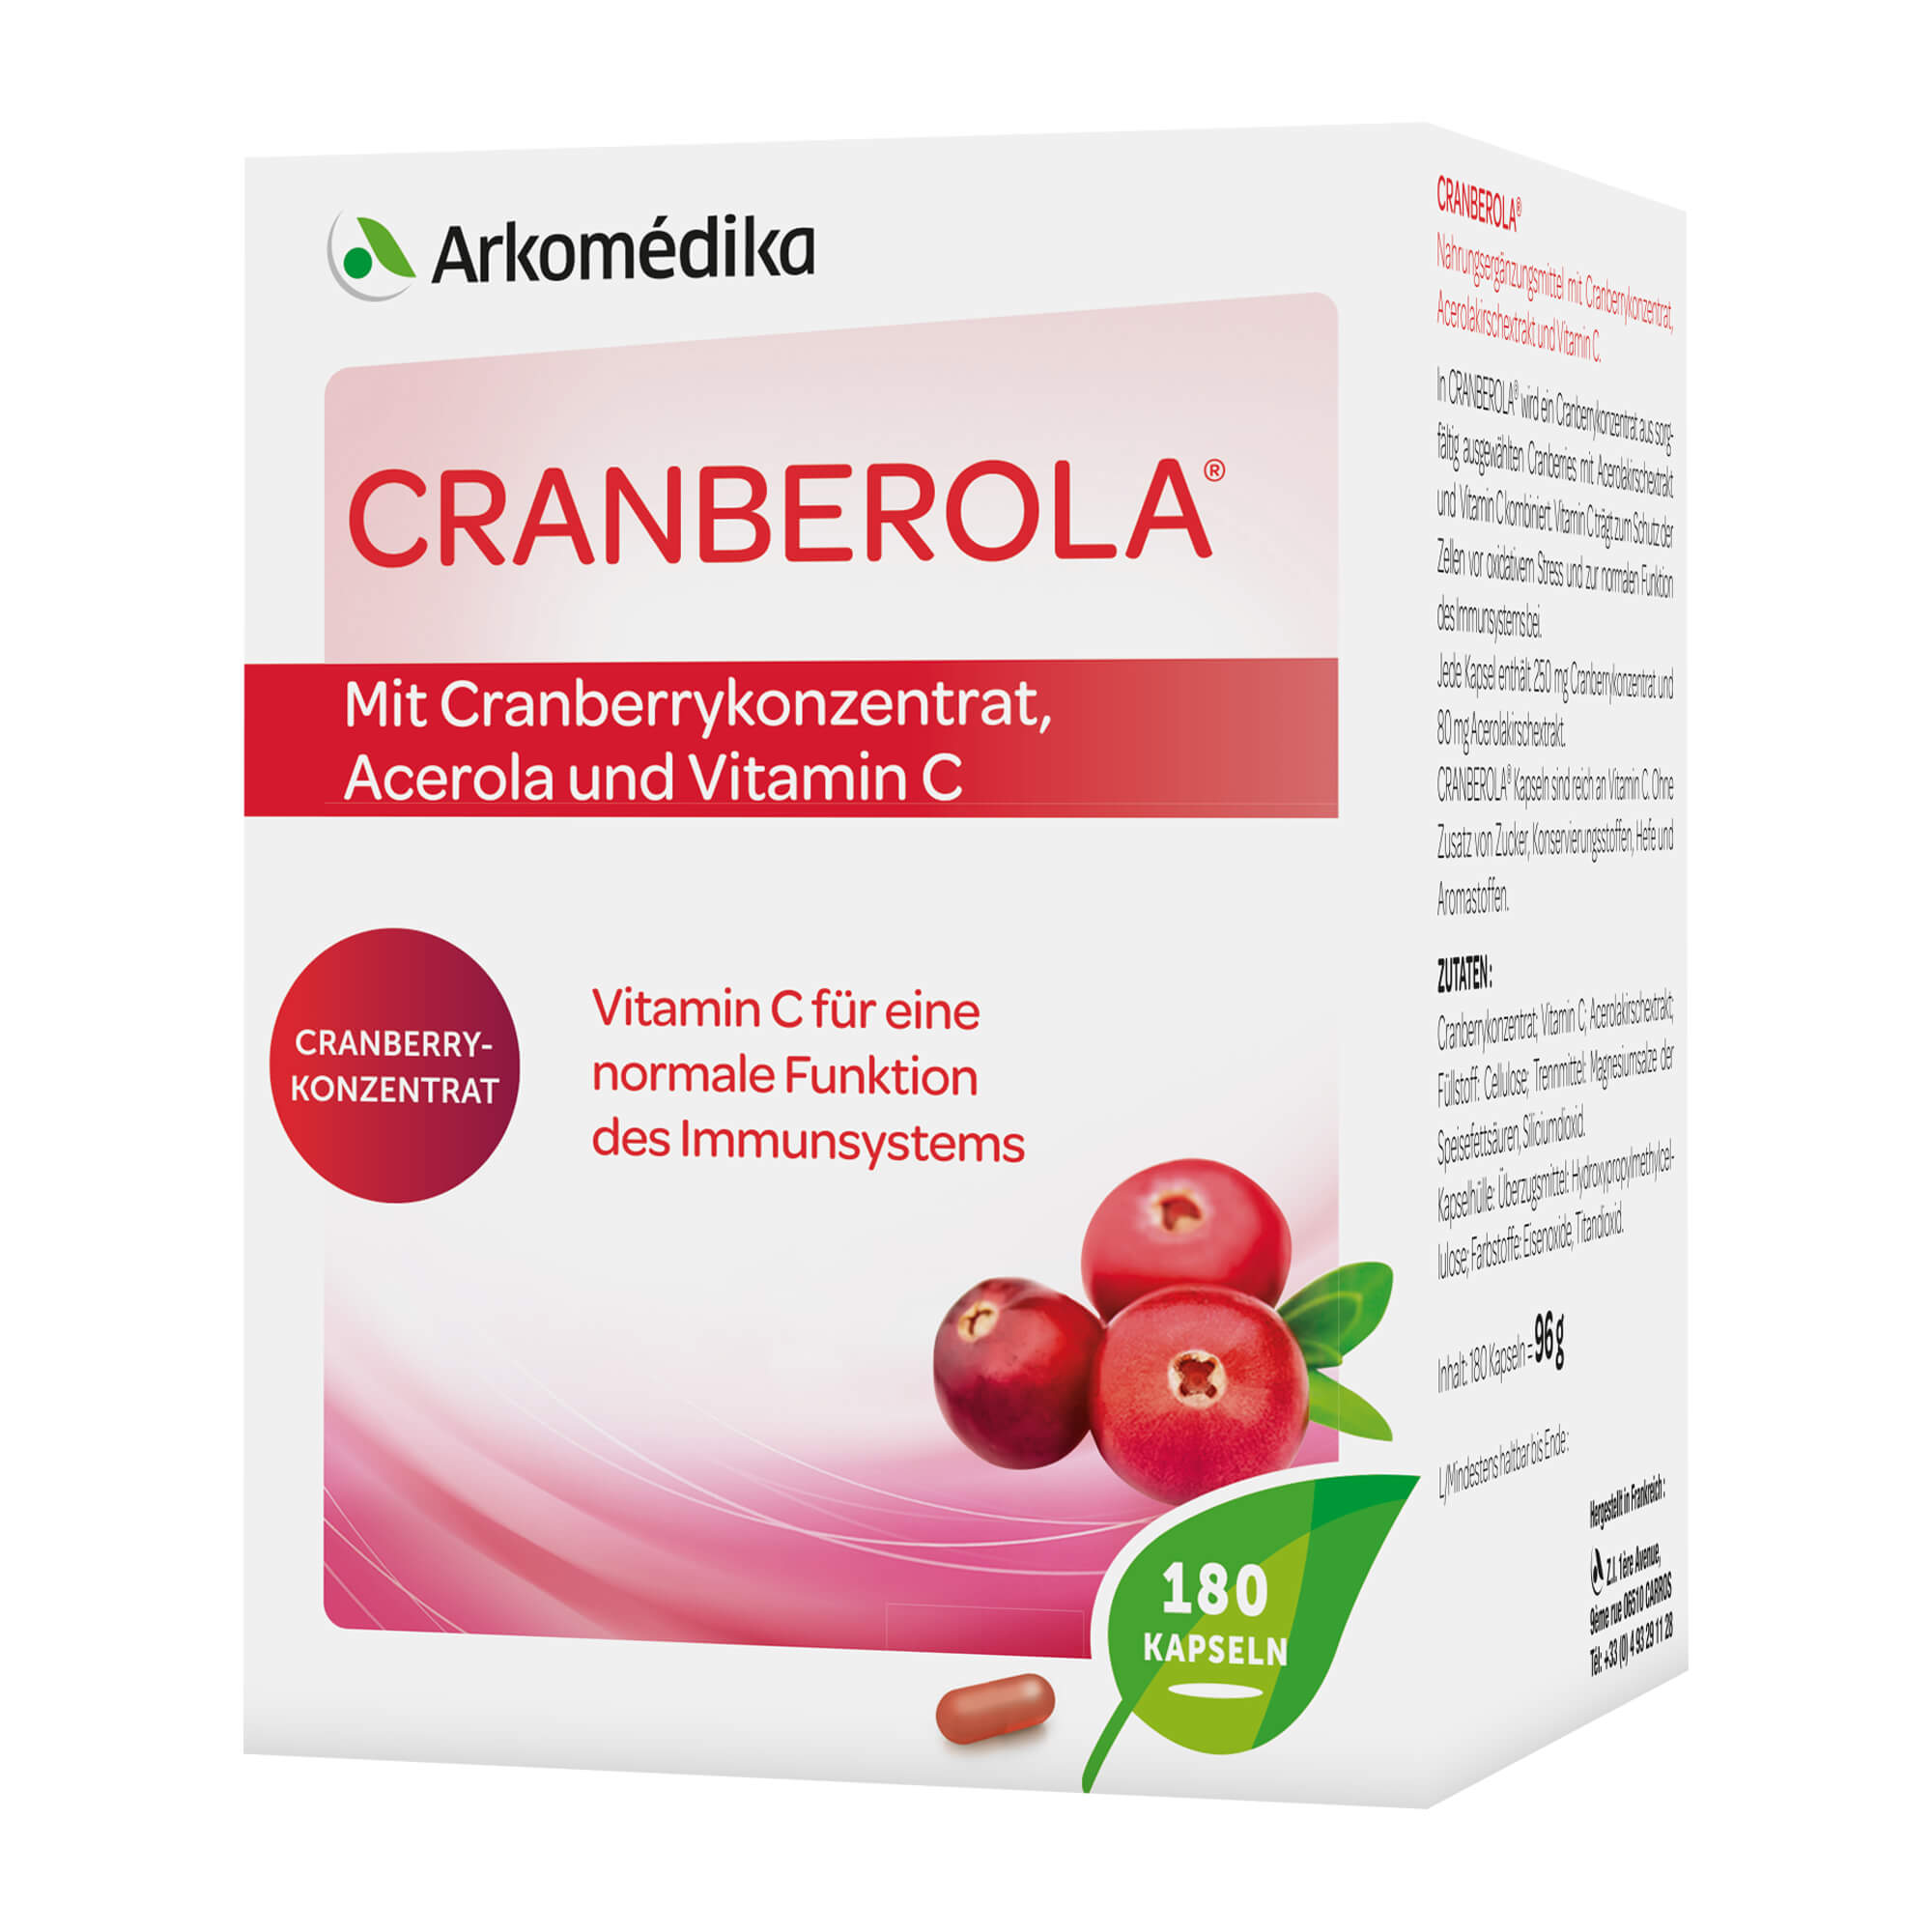 Nahrungsergänzungsmittel mit Cranberry-Fruchtpulver, Acerolakirschextrakt und Vitamin C.